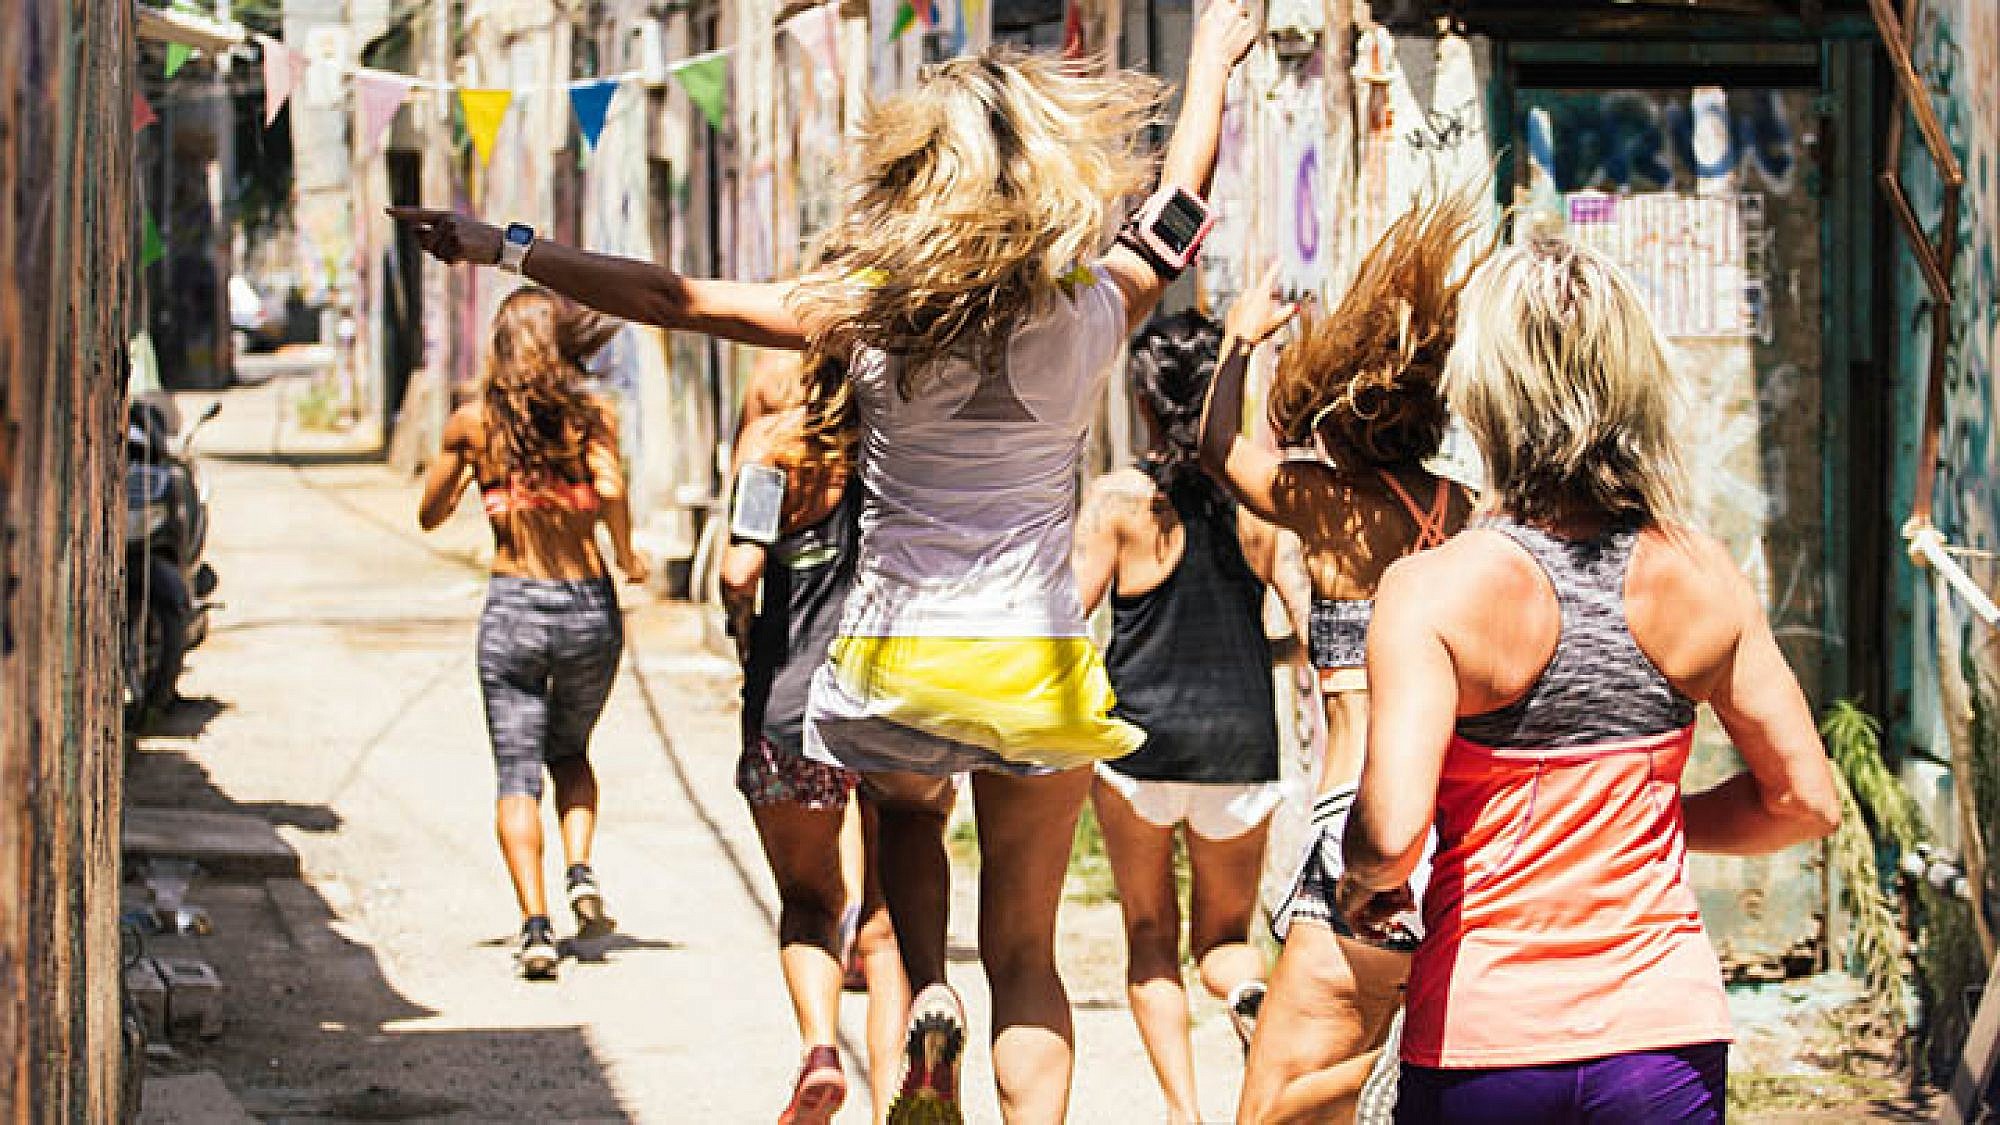 קבוצת הריצה ברחובות תל אביב | צילום: גילי אזגד